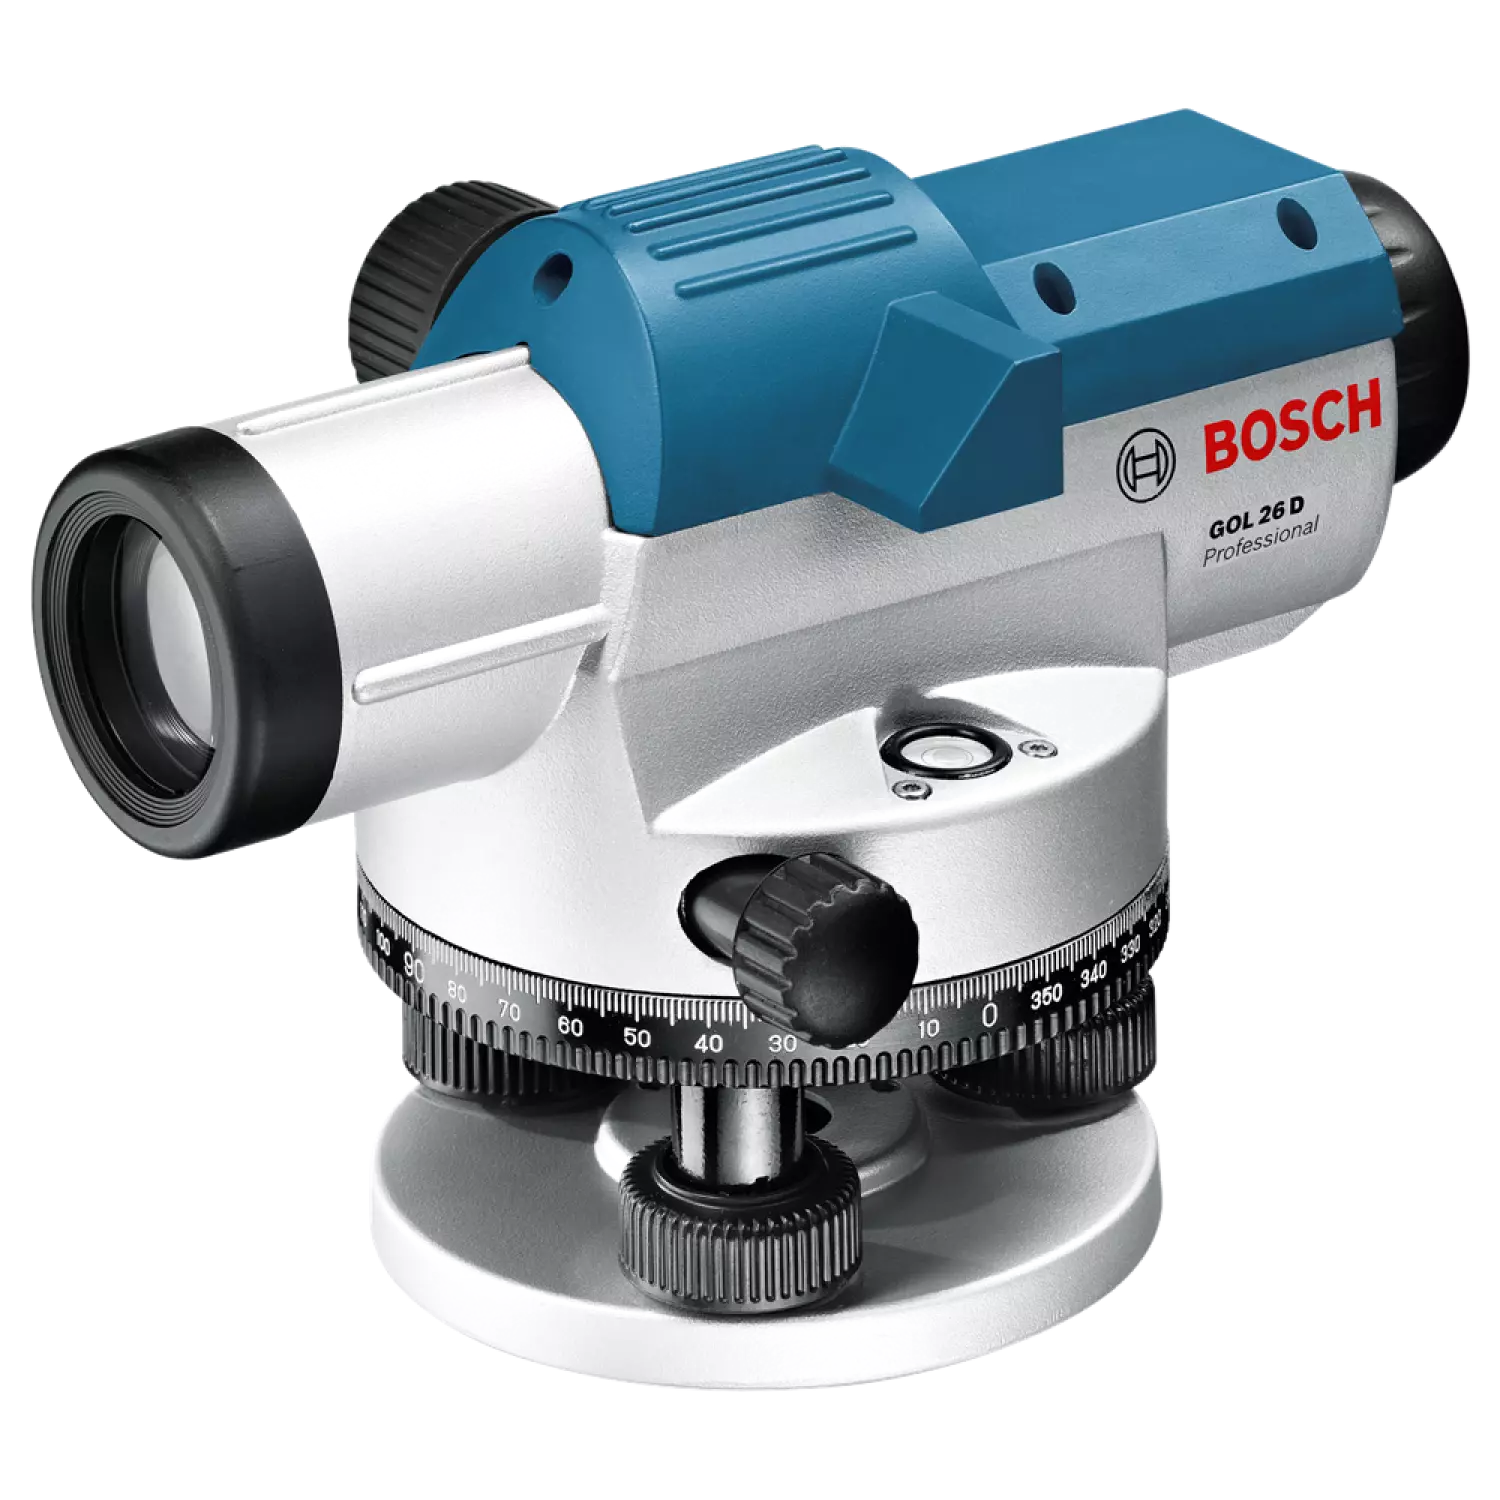 Bosch GOL 26 D Optisch waterpastoestel met vergrotingsfactor - 100mm - in koffer + BT 160 Bouwstatief - 160cm + GR 500 Meetlat 5M-image